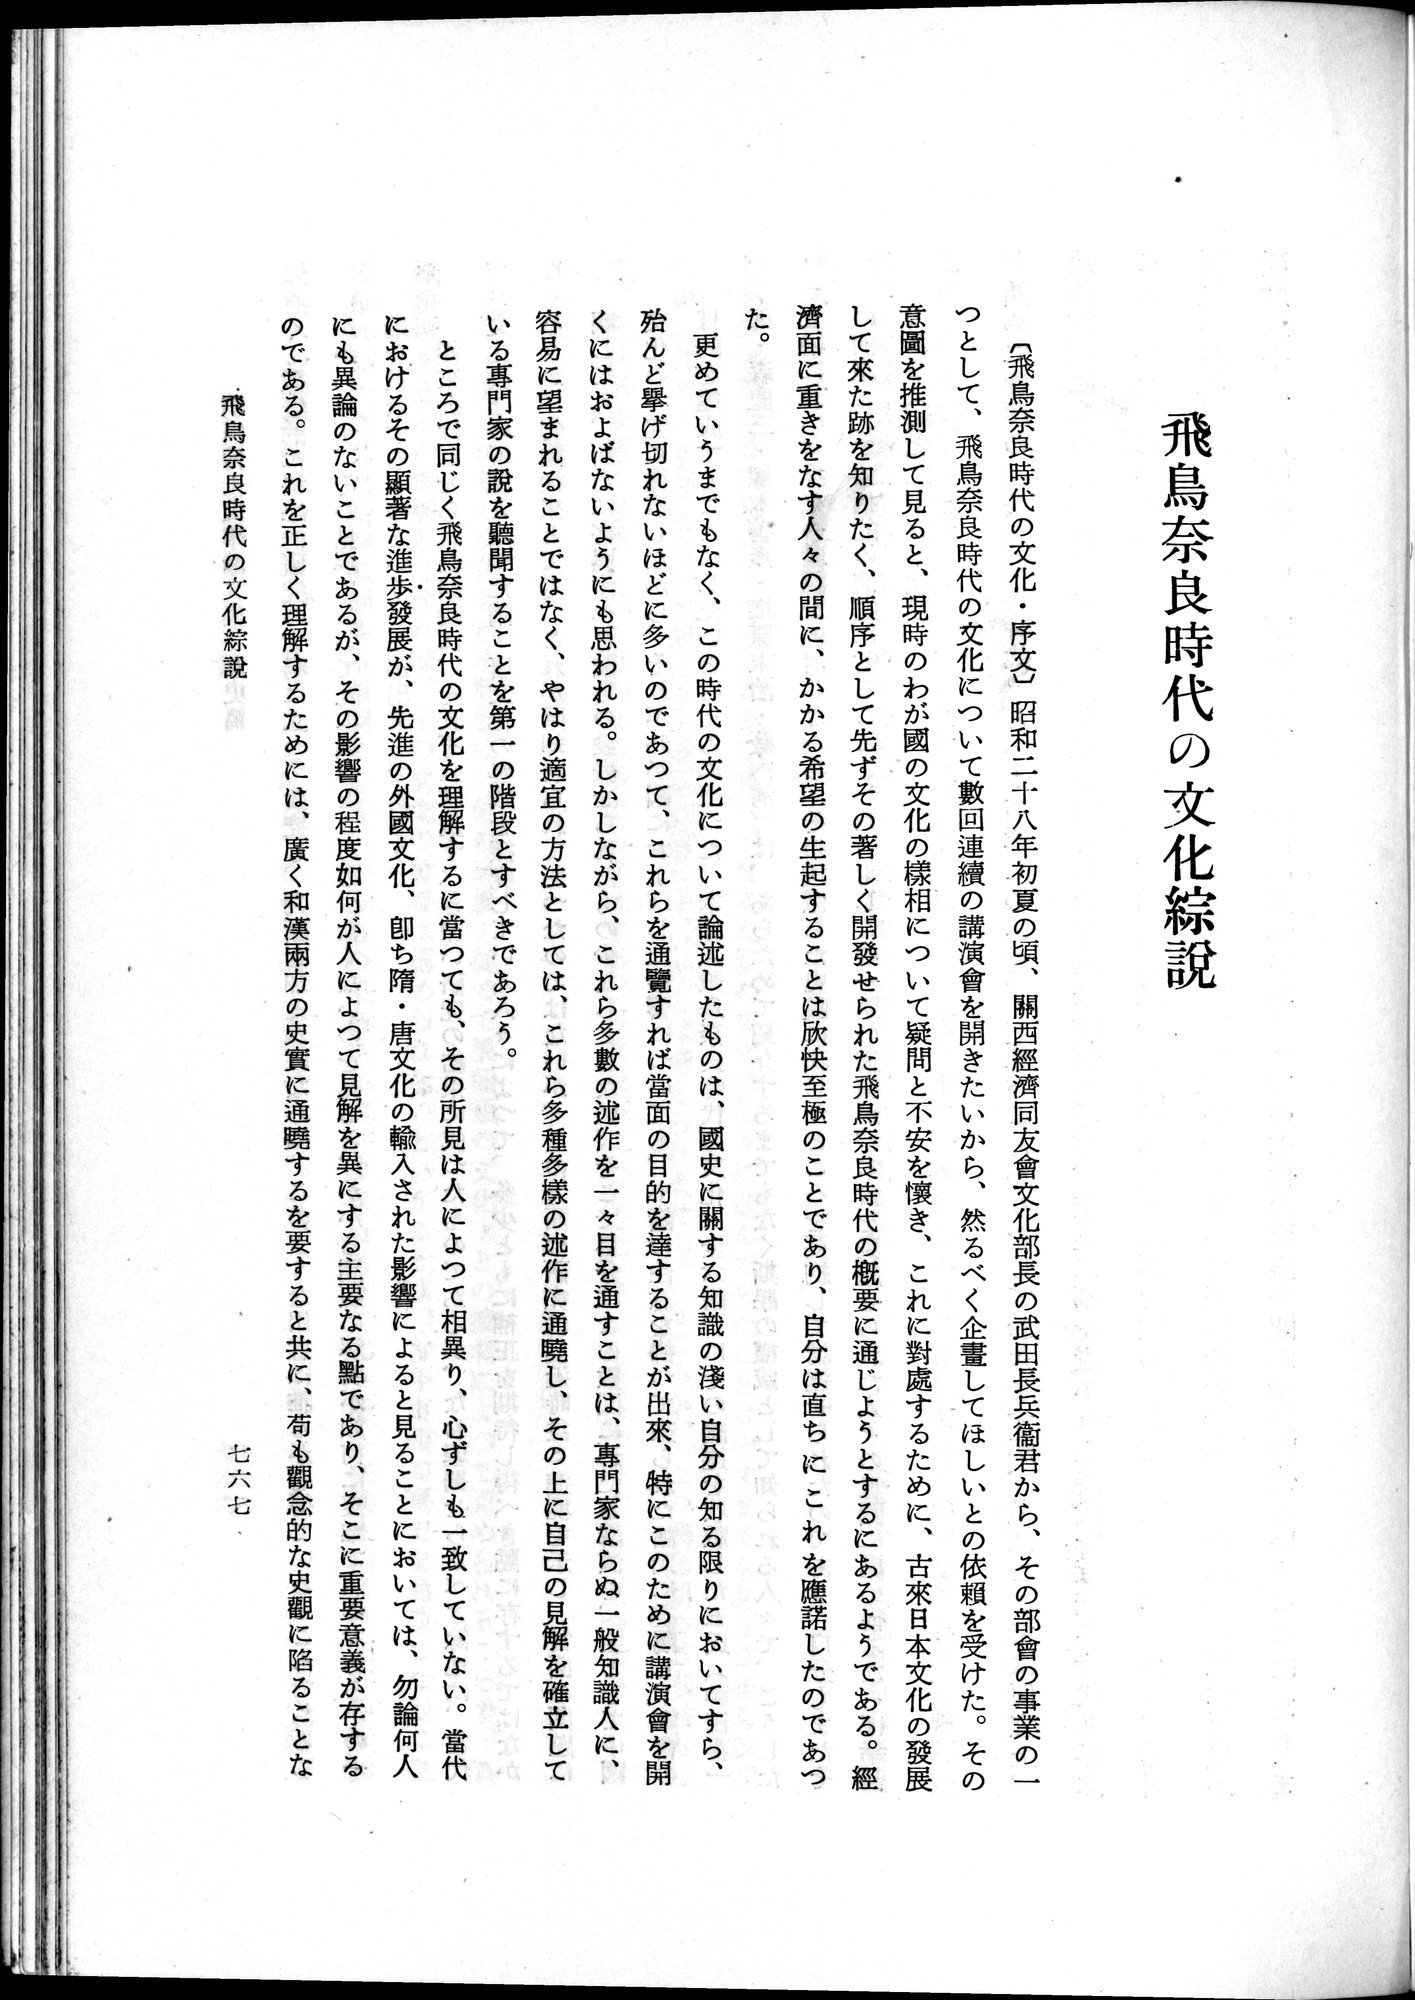 羽田博士史学論文集 : vol.1 / Page 805 (Grayscale High Resolution Image)